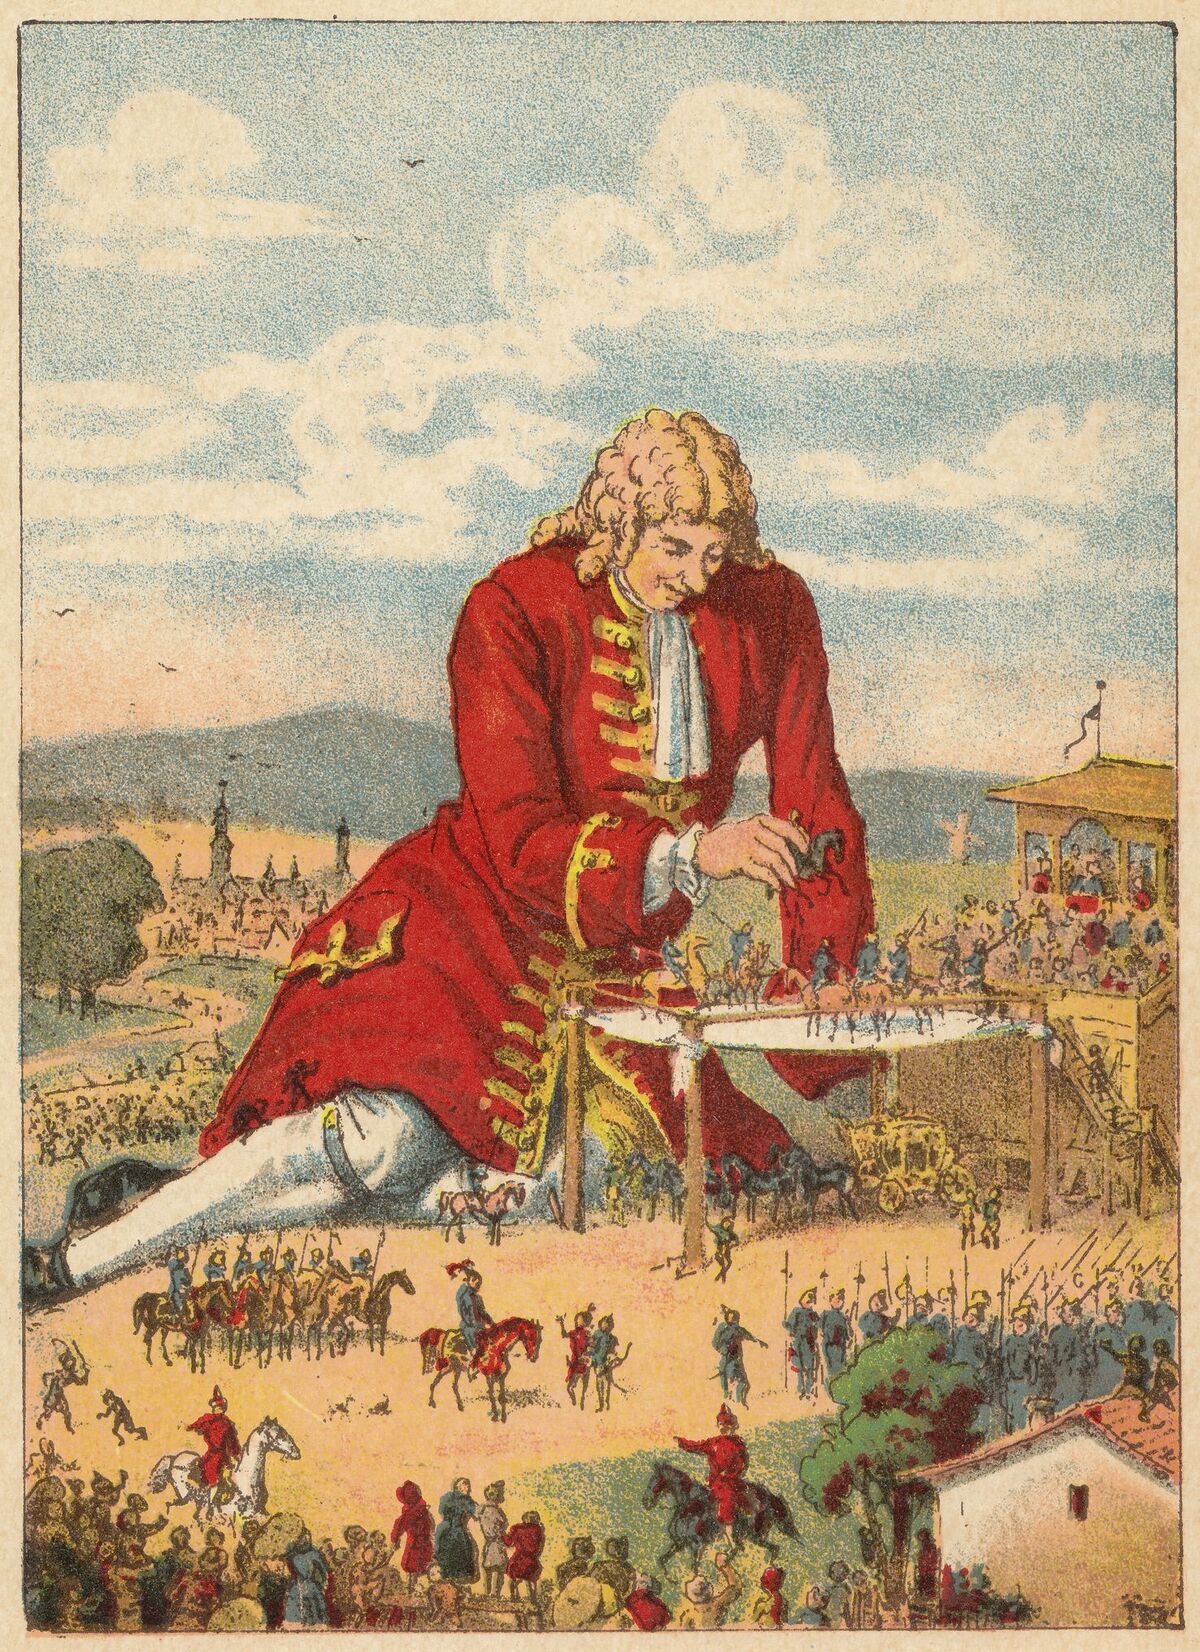 Отец гулливера. Джонатан Свифт Gulliver's Travels 1726. Джонатан Свифт путешествия Гулливера путешествие в Лилипутию. Jonathan Swift Gulliver's Travels. Джонатан Свифт путешествия Гулливера иллюстрации.